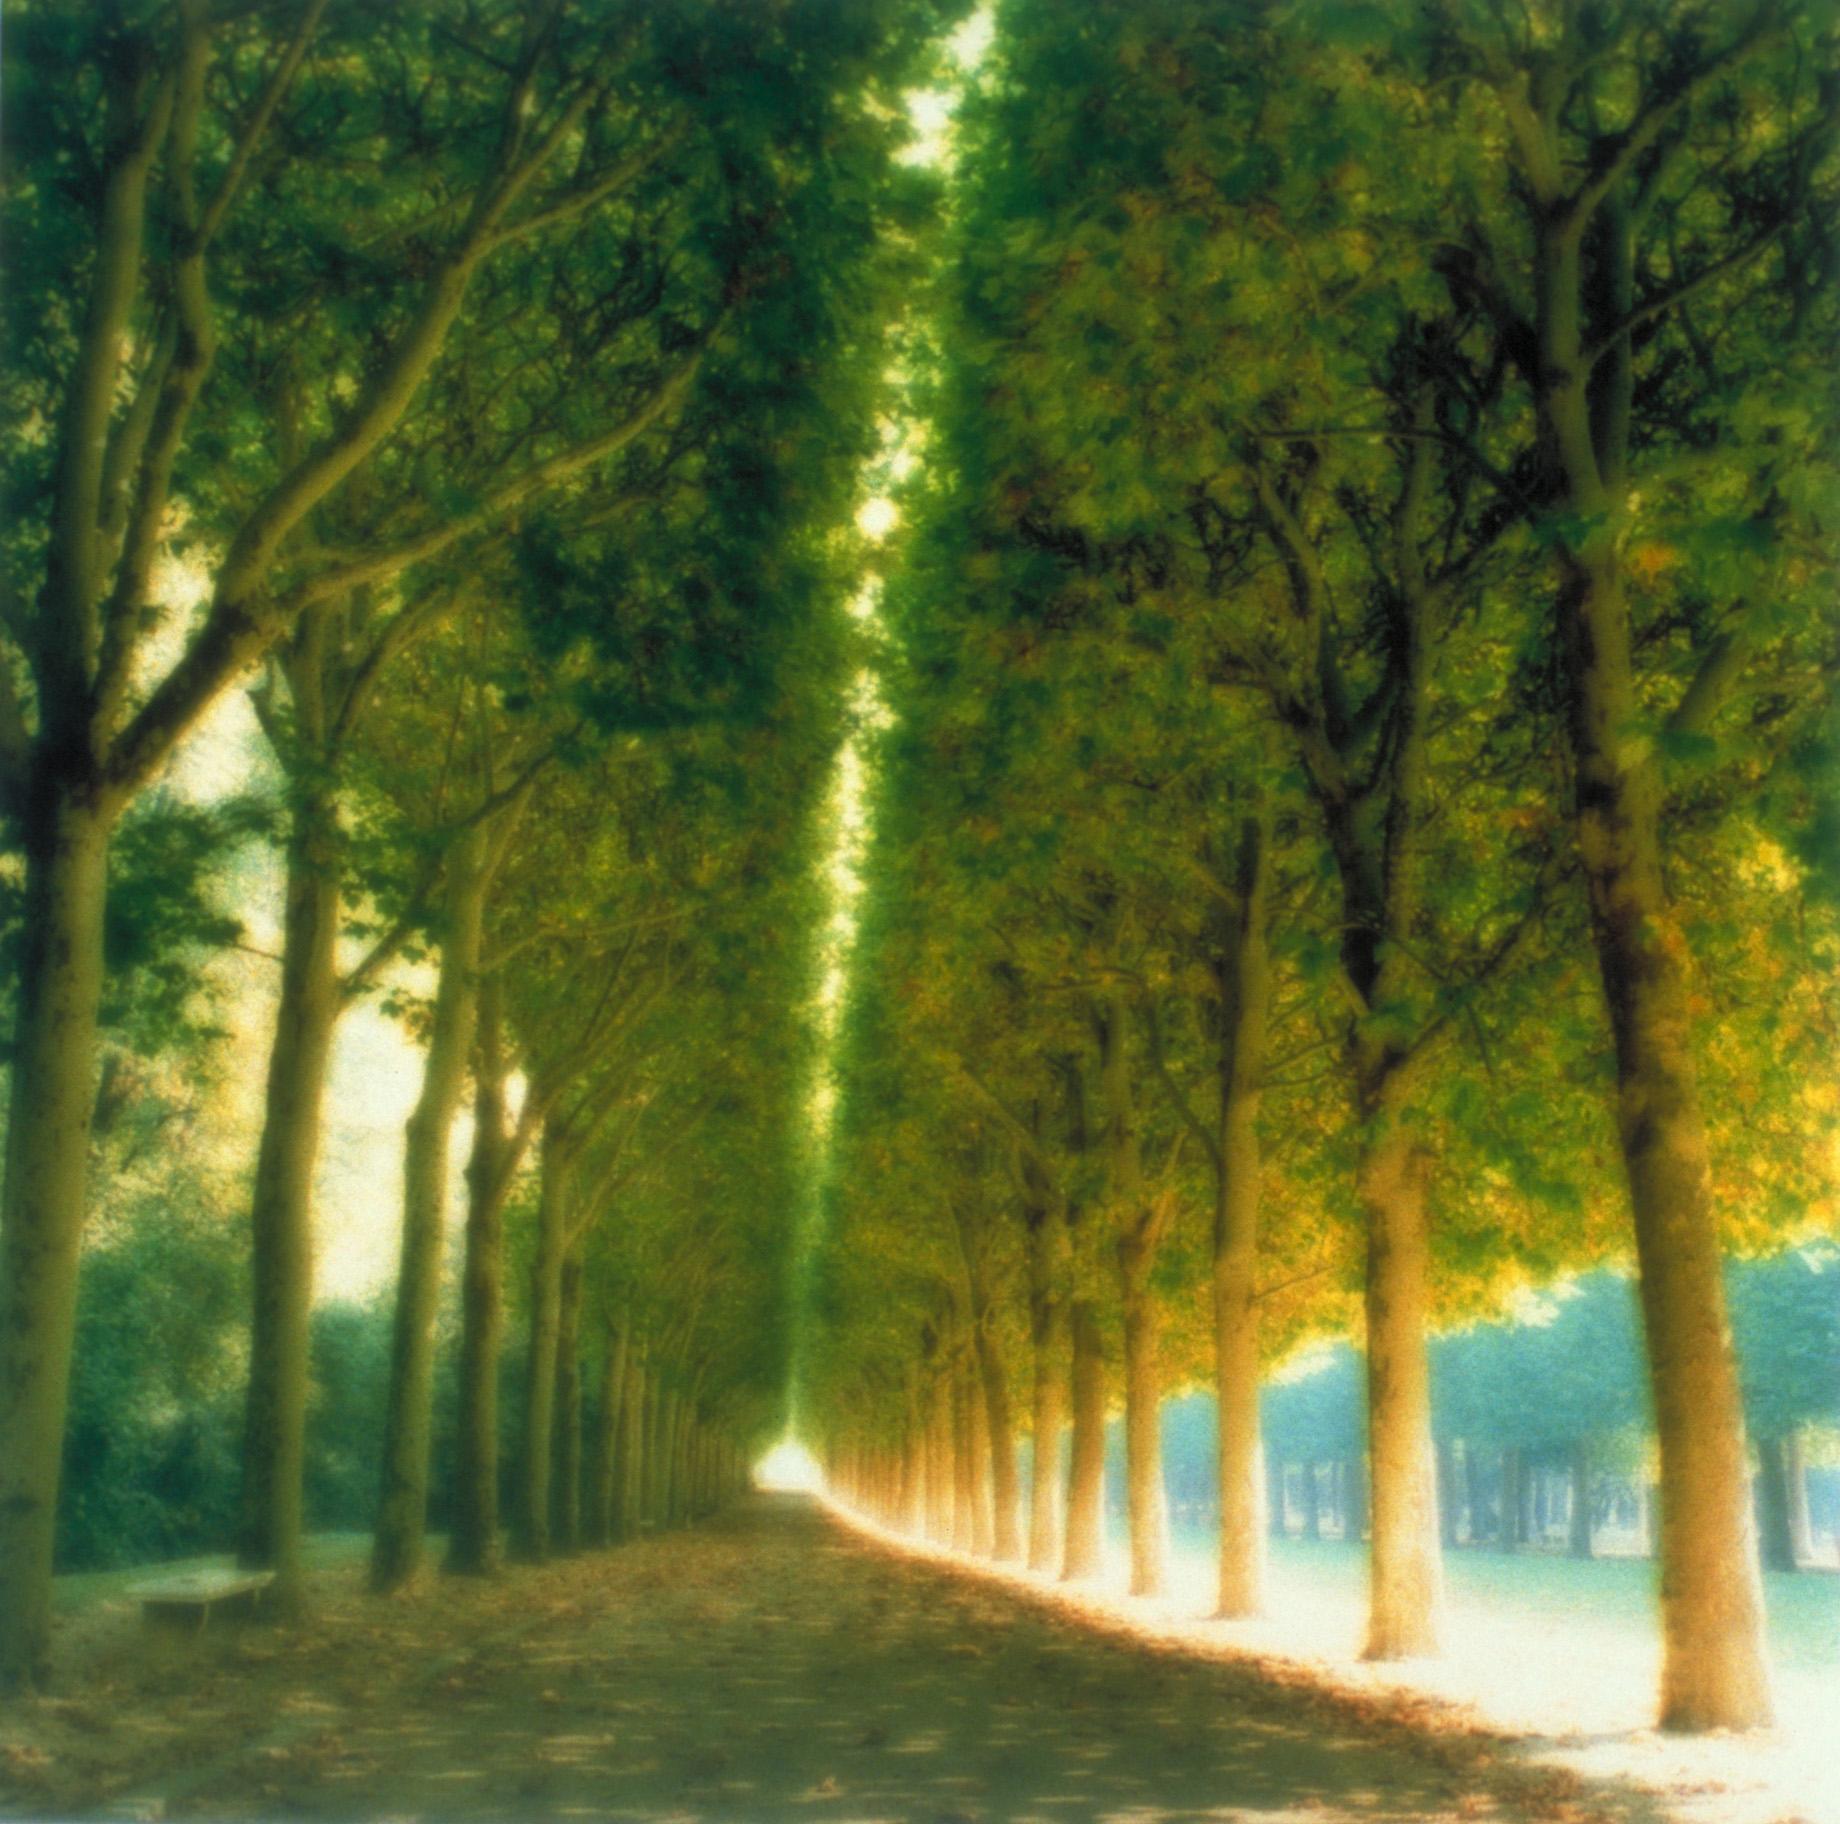 Color Photograph Lynn Geesaman - Parc de Sceaux, France (10-97-7c-8)